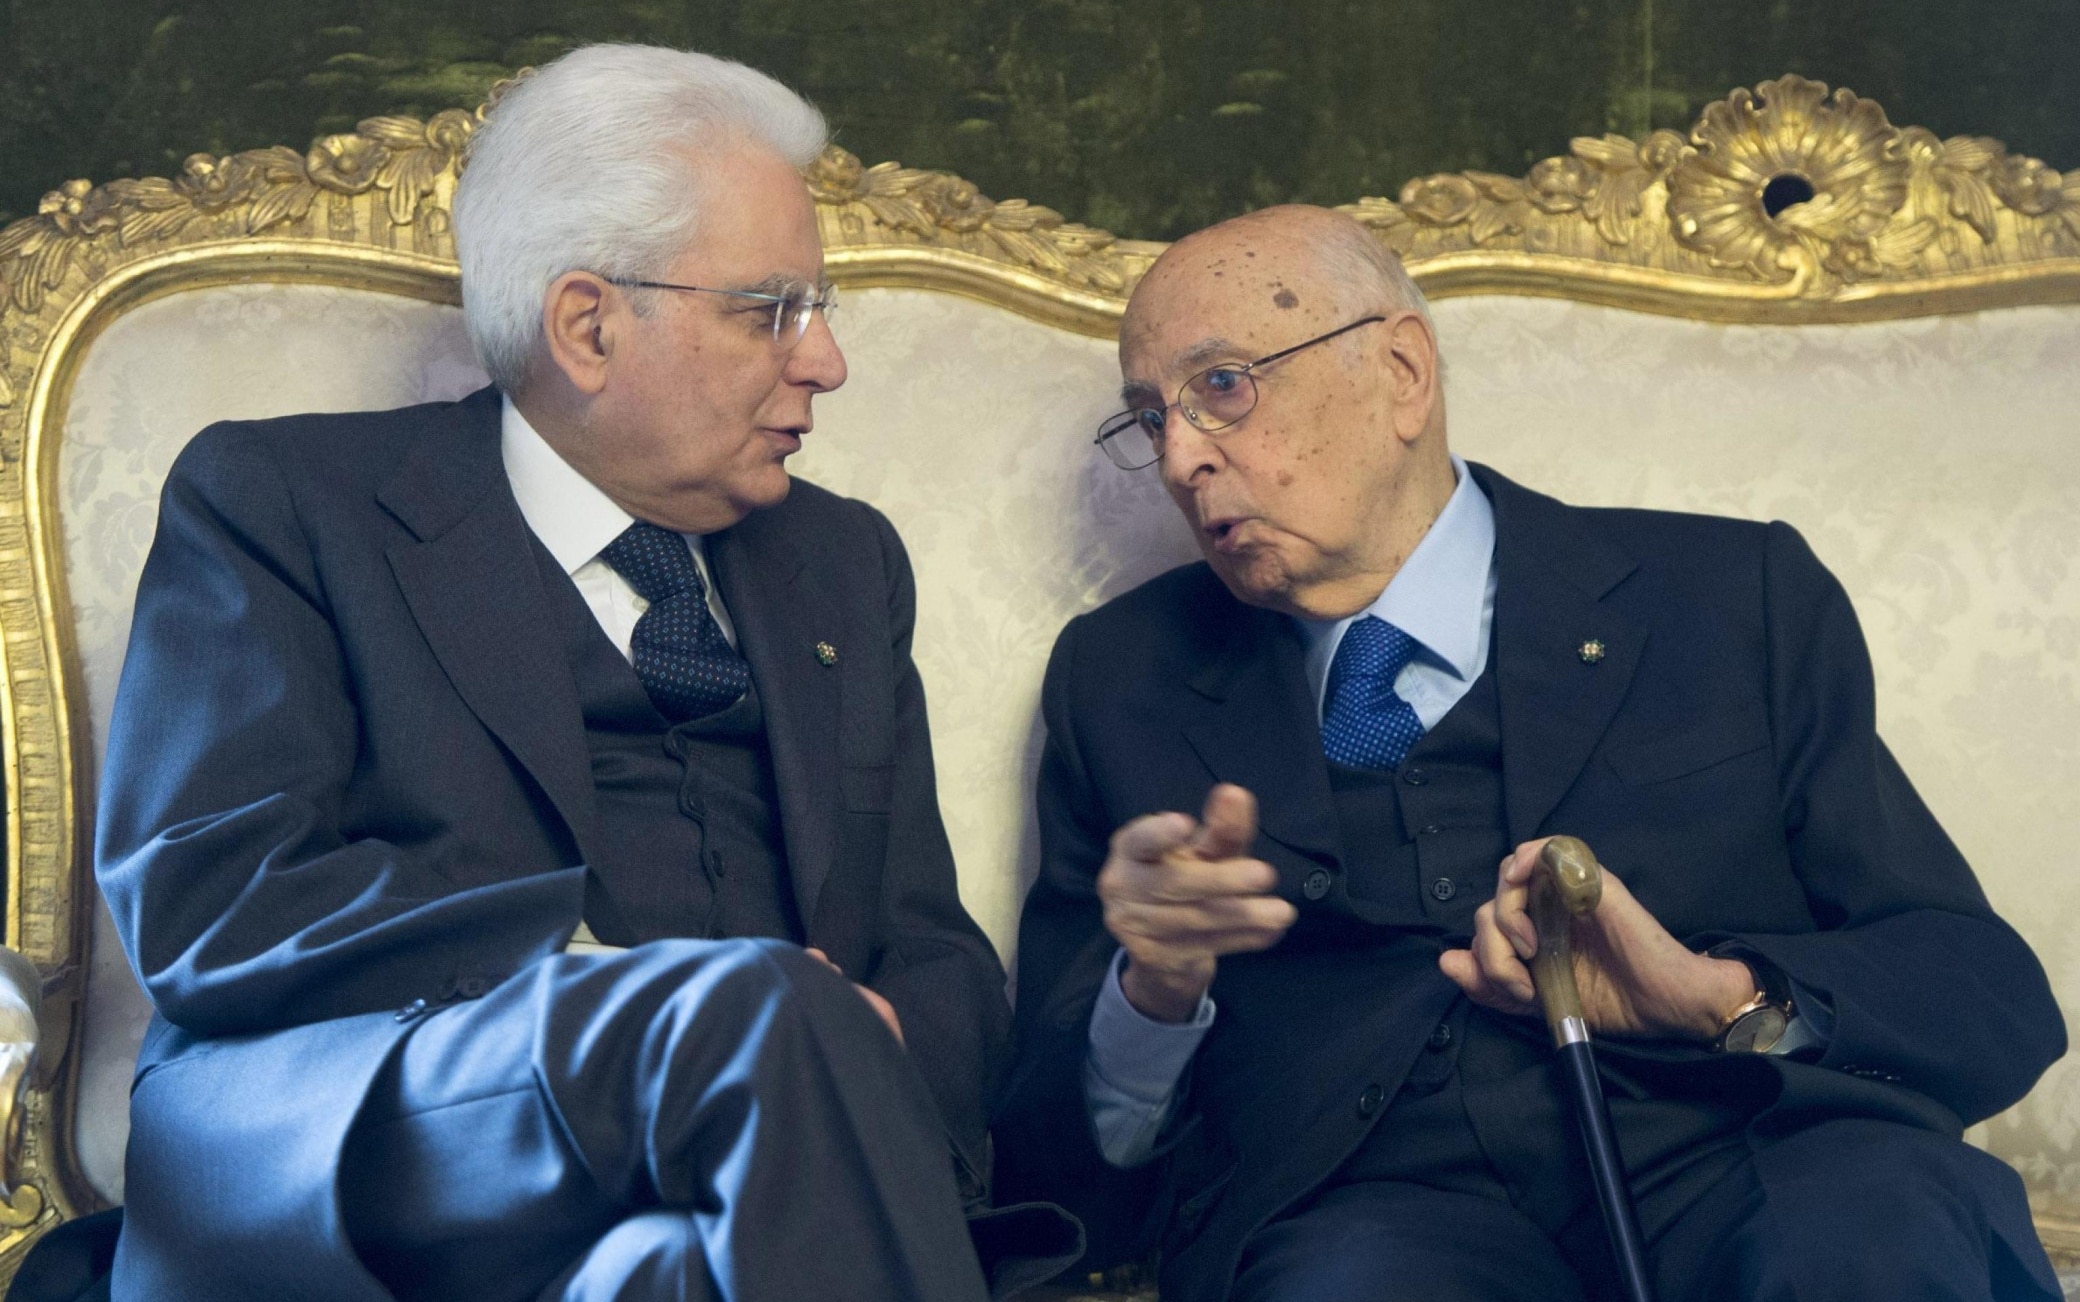 Quirinale, is Mattarella bis: Napolitano’s precedent nine years ago